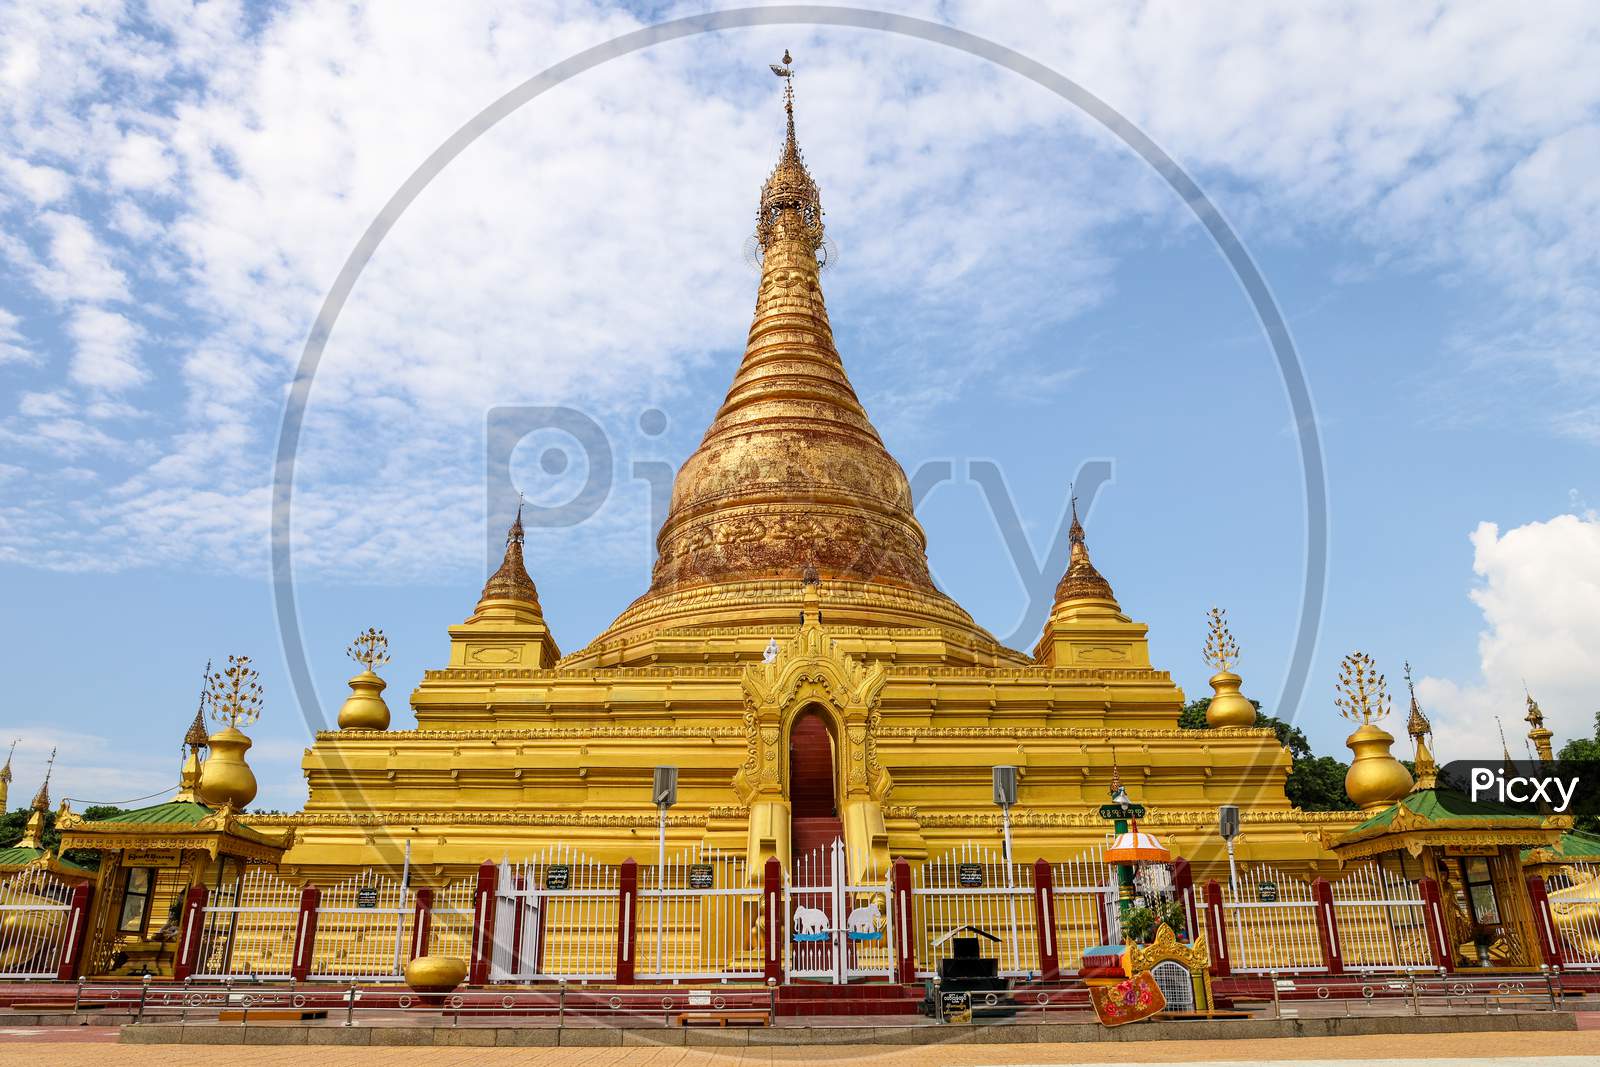 Kuthodaw Pagoda in Mandalay, Myanmar (Burma)